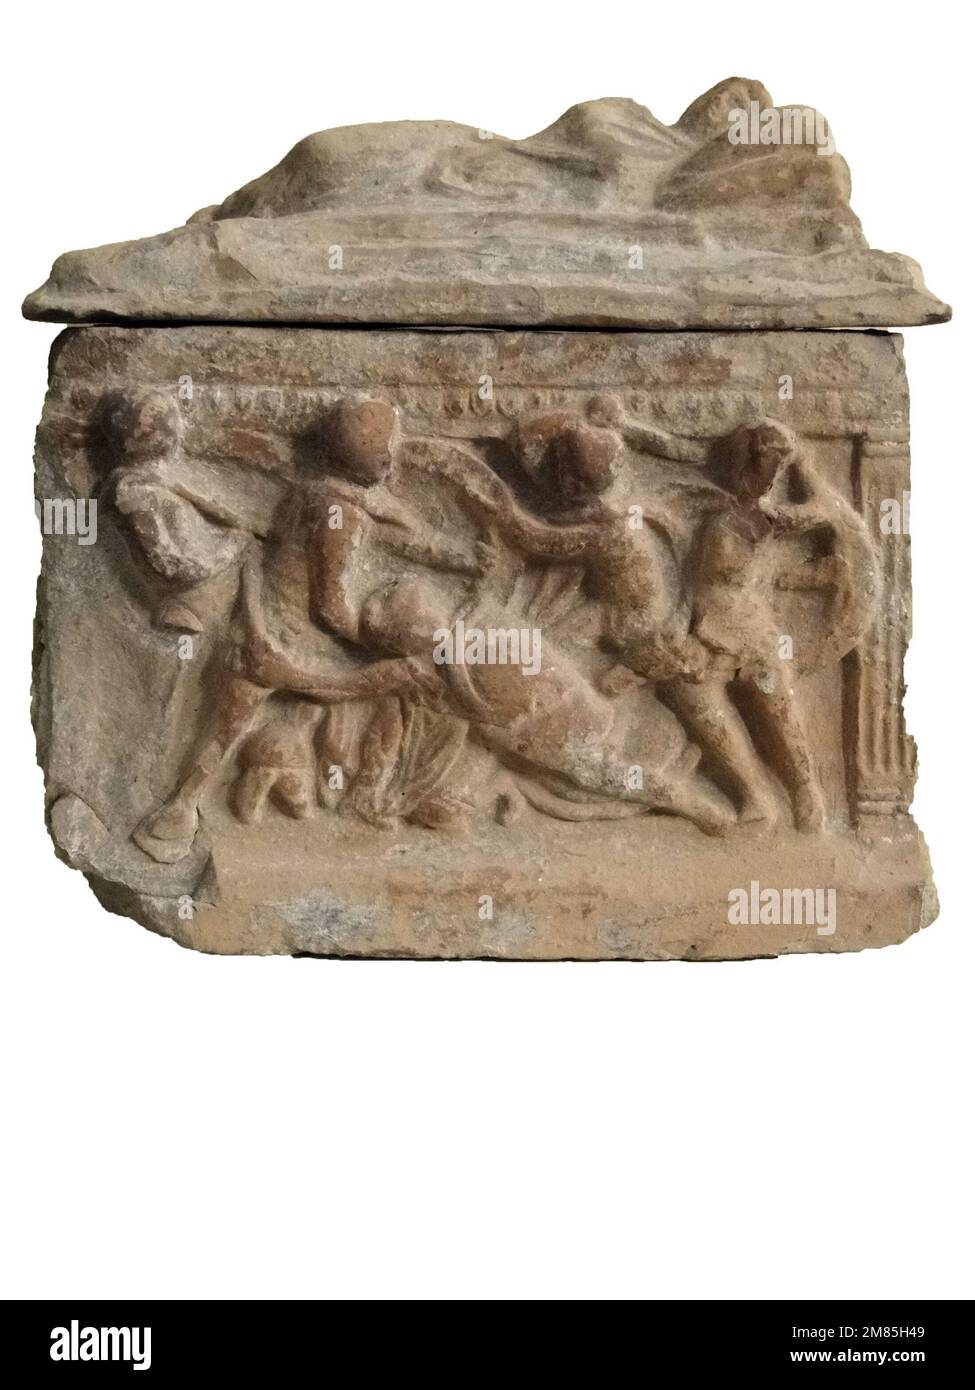 Les détails d'un sarcophage romain antique avec sculpture et décoration trouvés à Avignon, France Banque D'Images